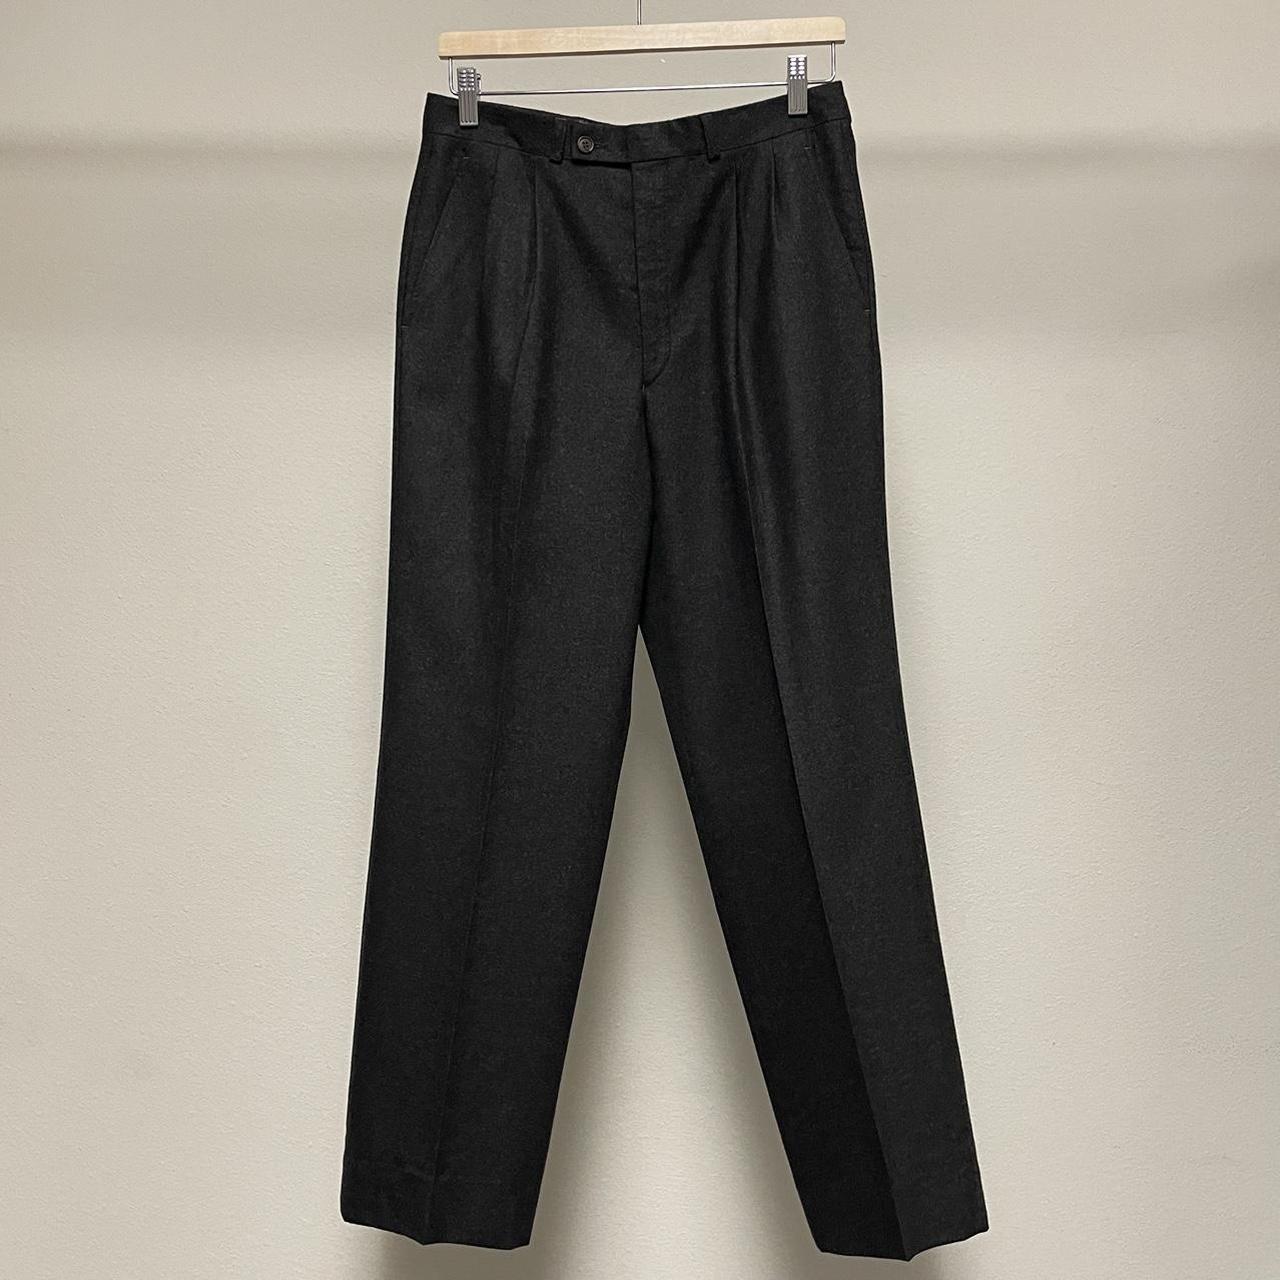 Vintage YSL wool pants 1990s charcoal grey pleated... - Depop